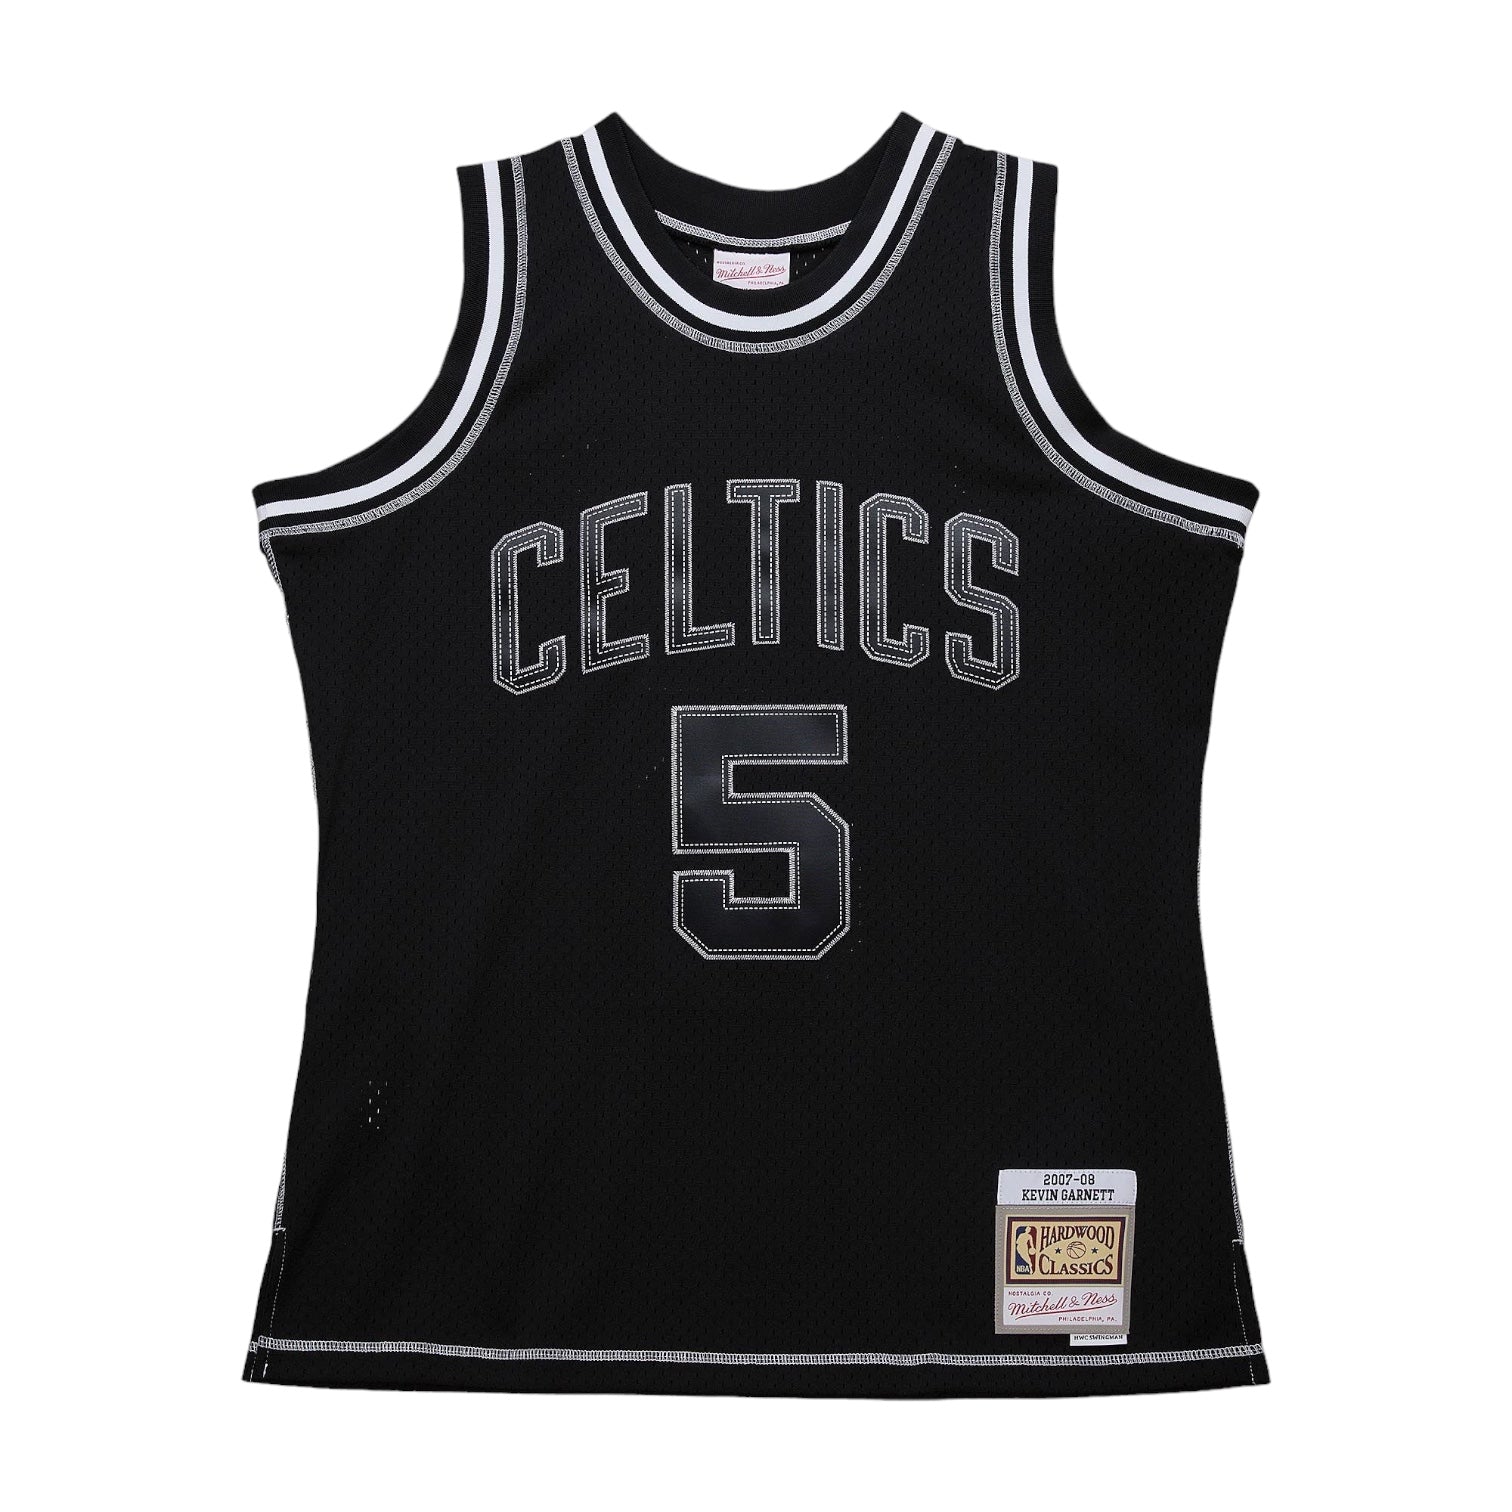 MITCHELL & NESS: Celtics Garnett 2K Jersey